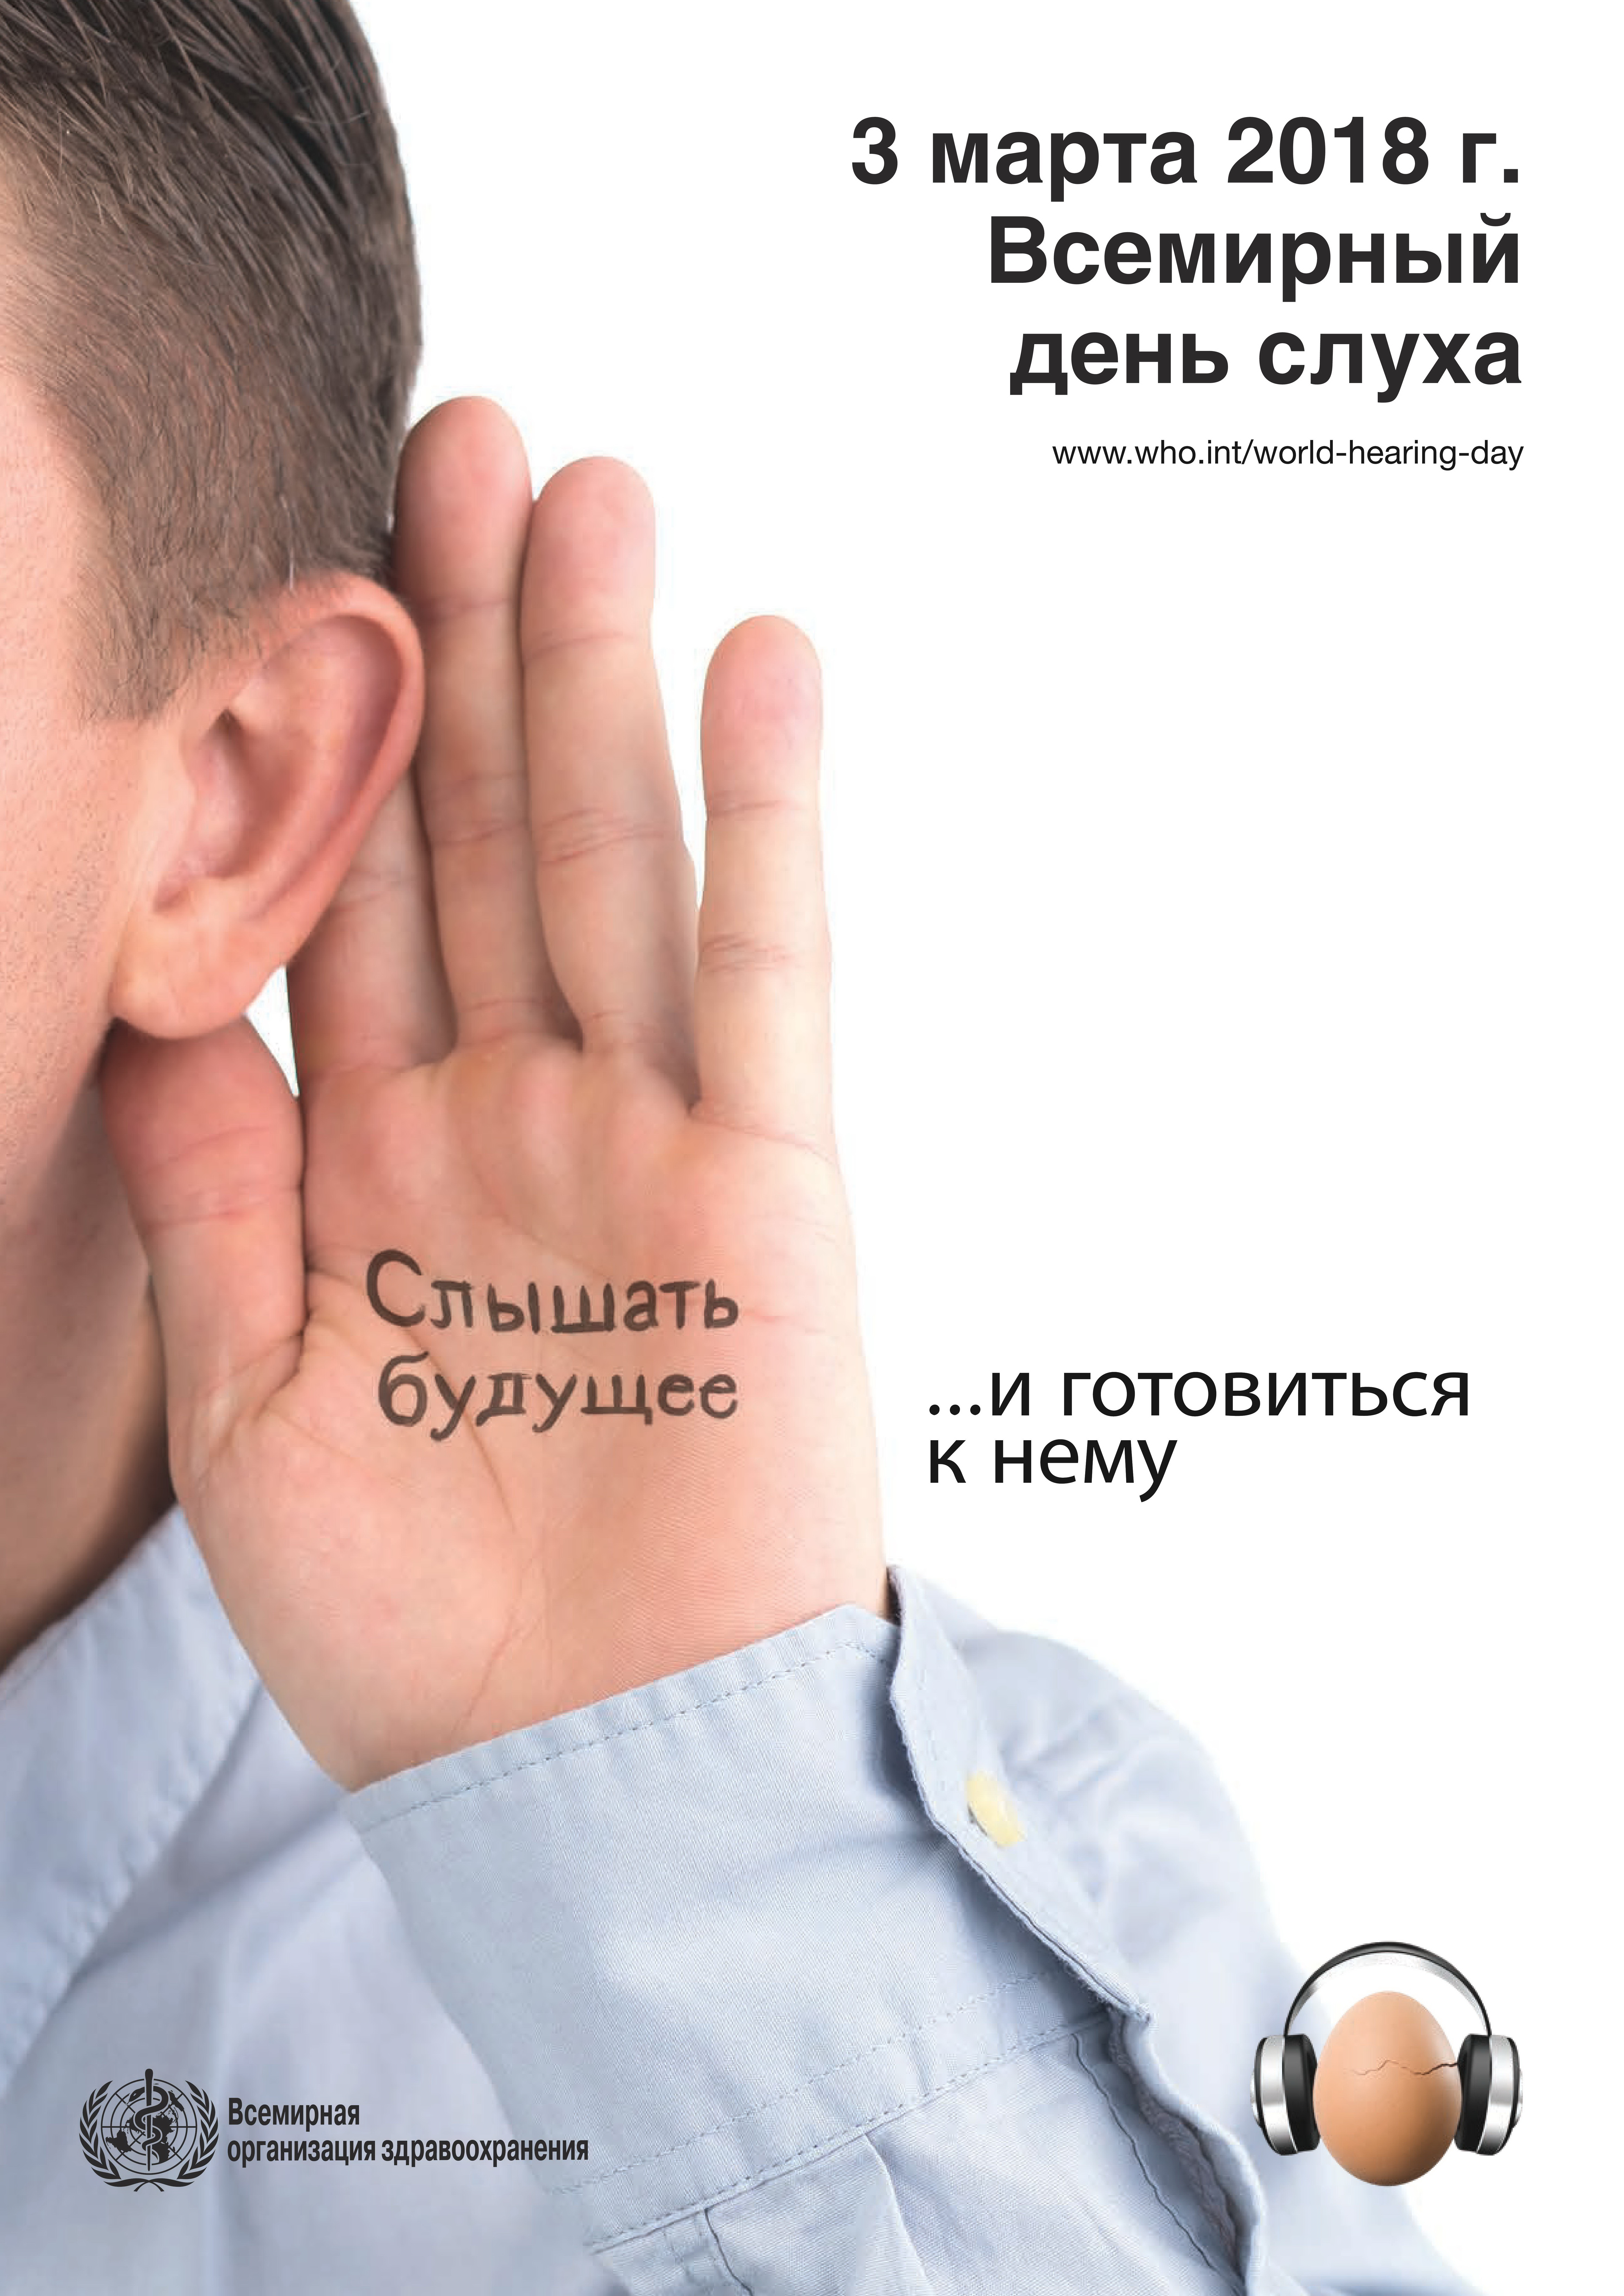 Международному дню охраны здоровья уха и слуха